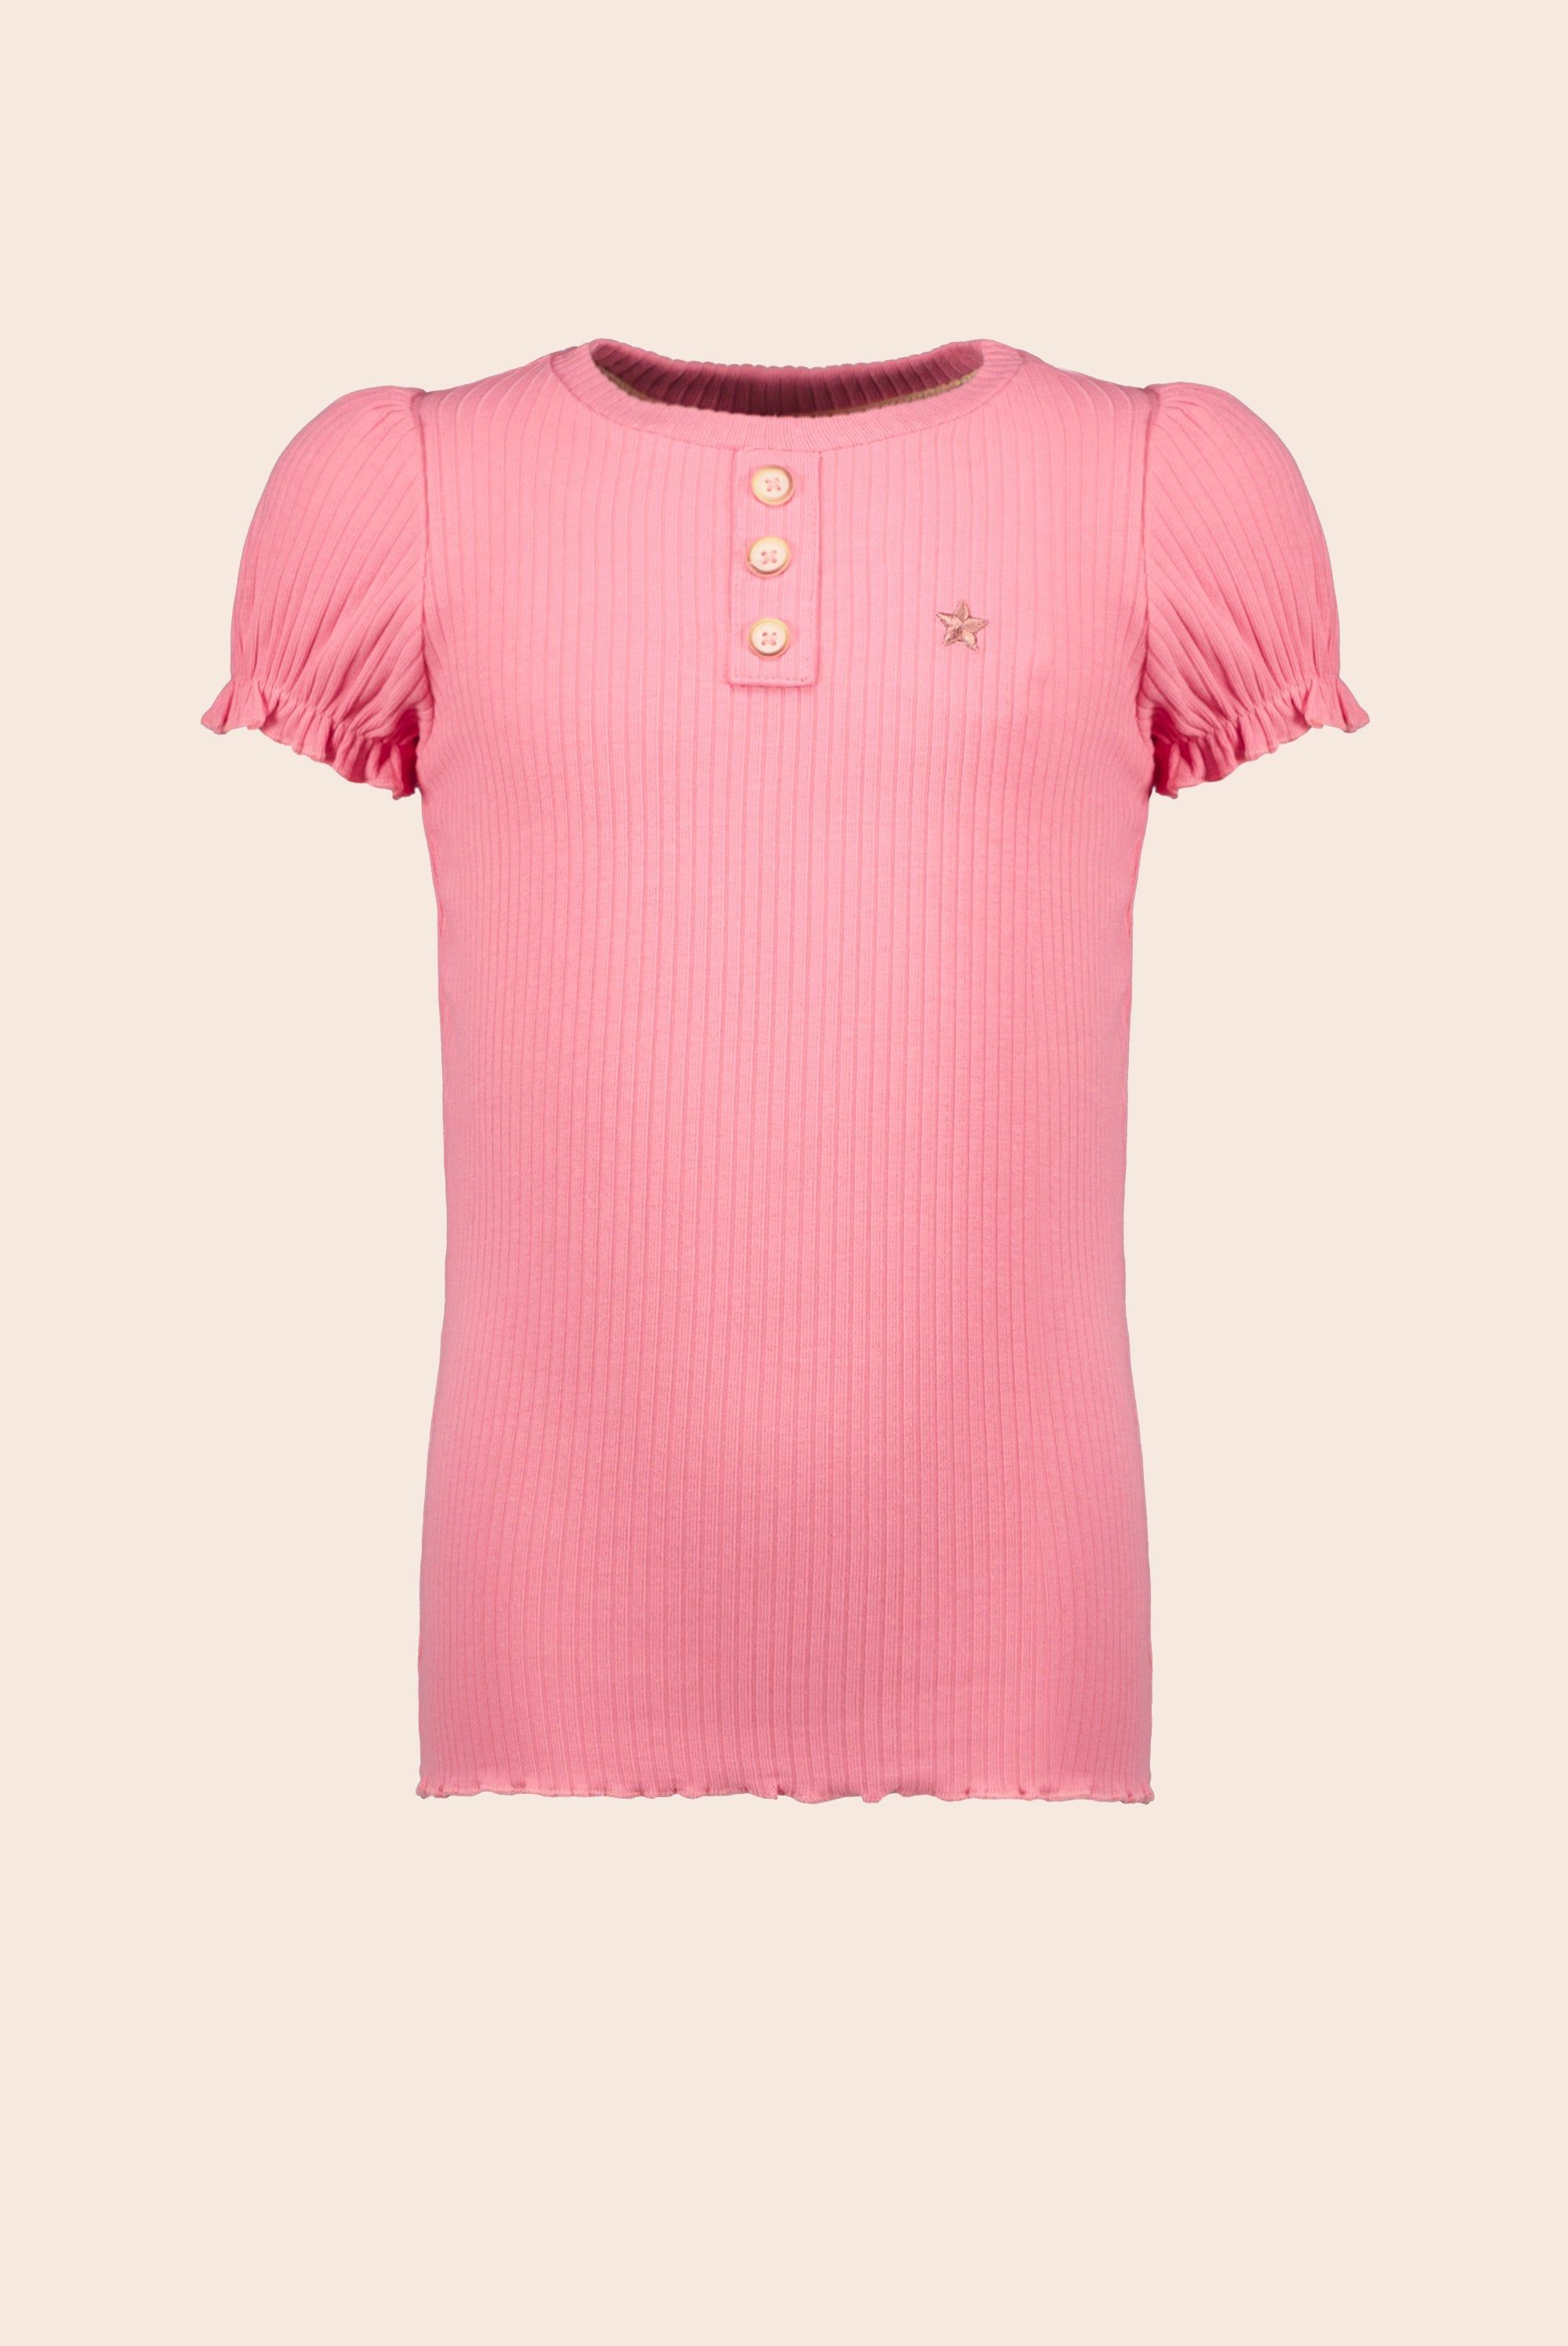 T-Shirt Flo girls solid rib tee Flamingo